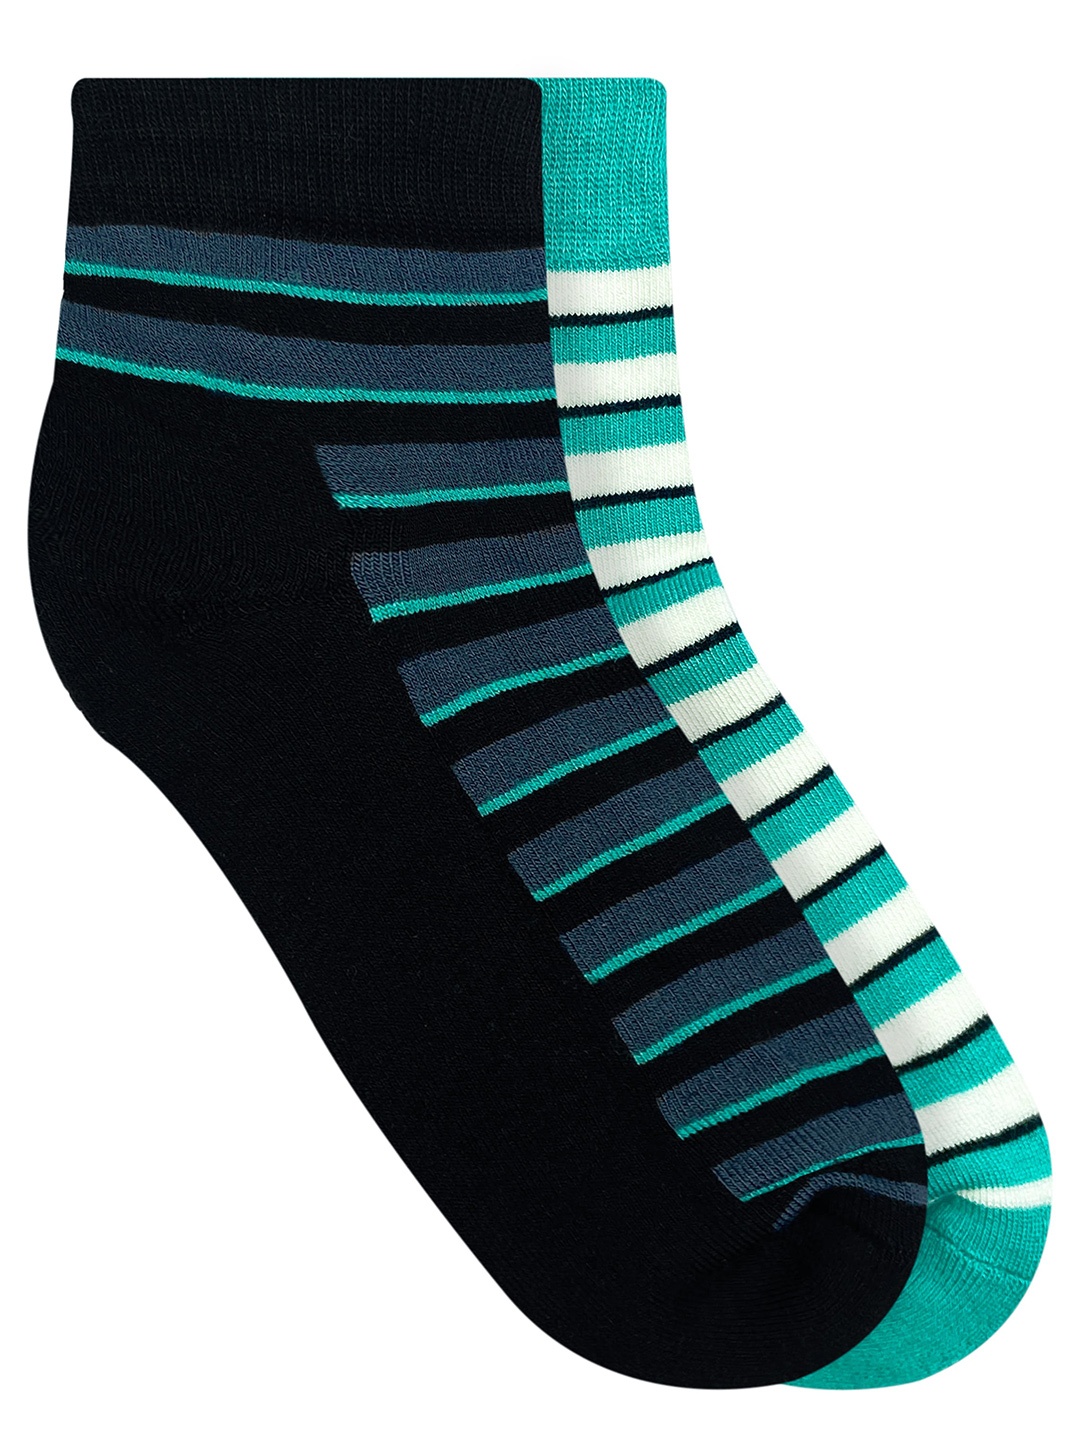 

Heelium Men Pack Of 2 Striped Ankle-Length Socks, Black